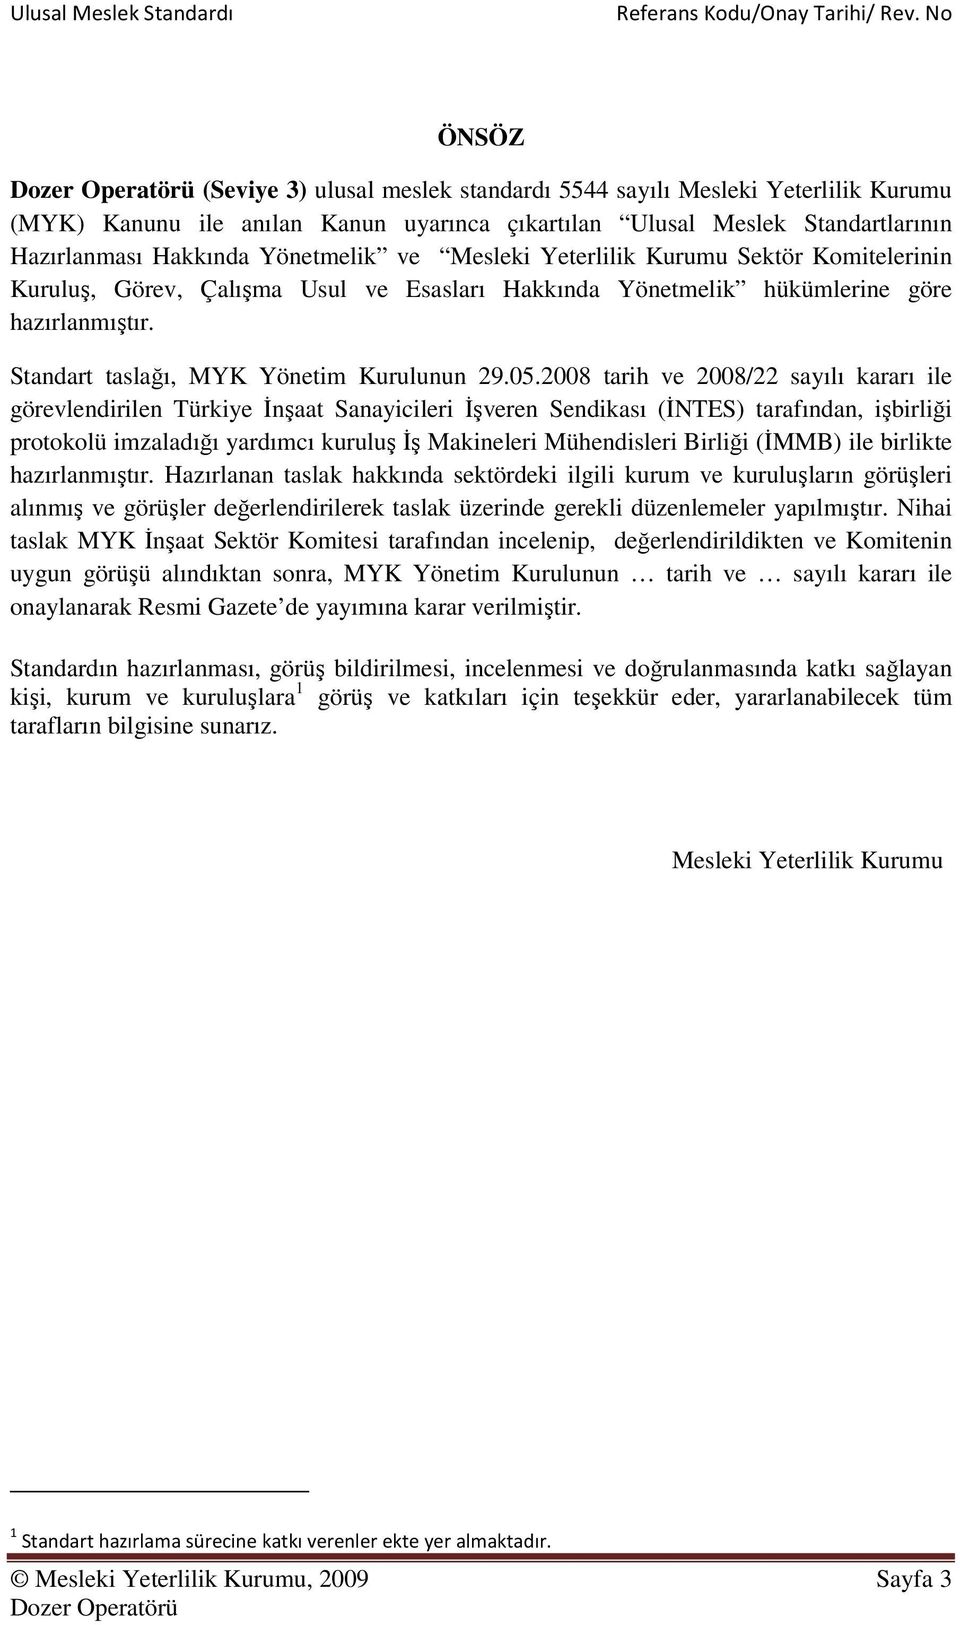 2008 tarih ve 2008/22 sayılı kararı ile görevlendirilen Türkiye İnşaat Sanayicileri İşveren Sendikası (İNTES) tarafından, işbirliği protokolü imzaladığı yardımcı kuruluş İş Makineleri Mühendisleri